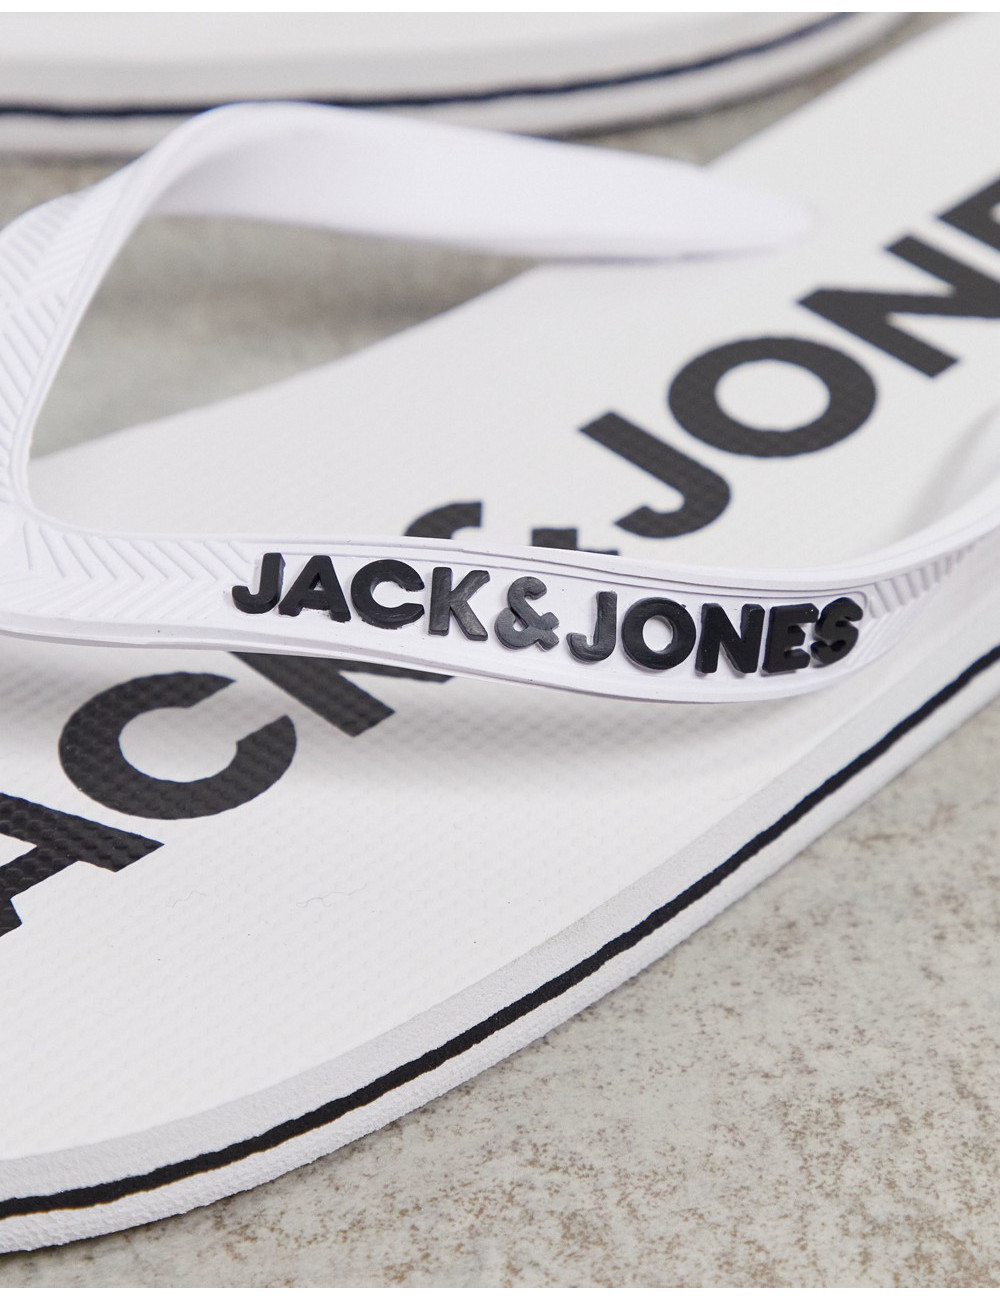 Jack & Jones flip flops...